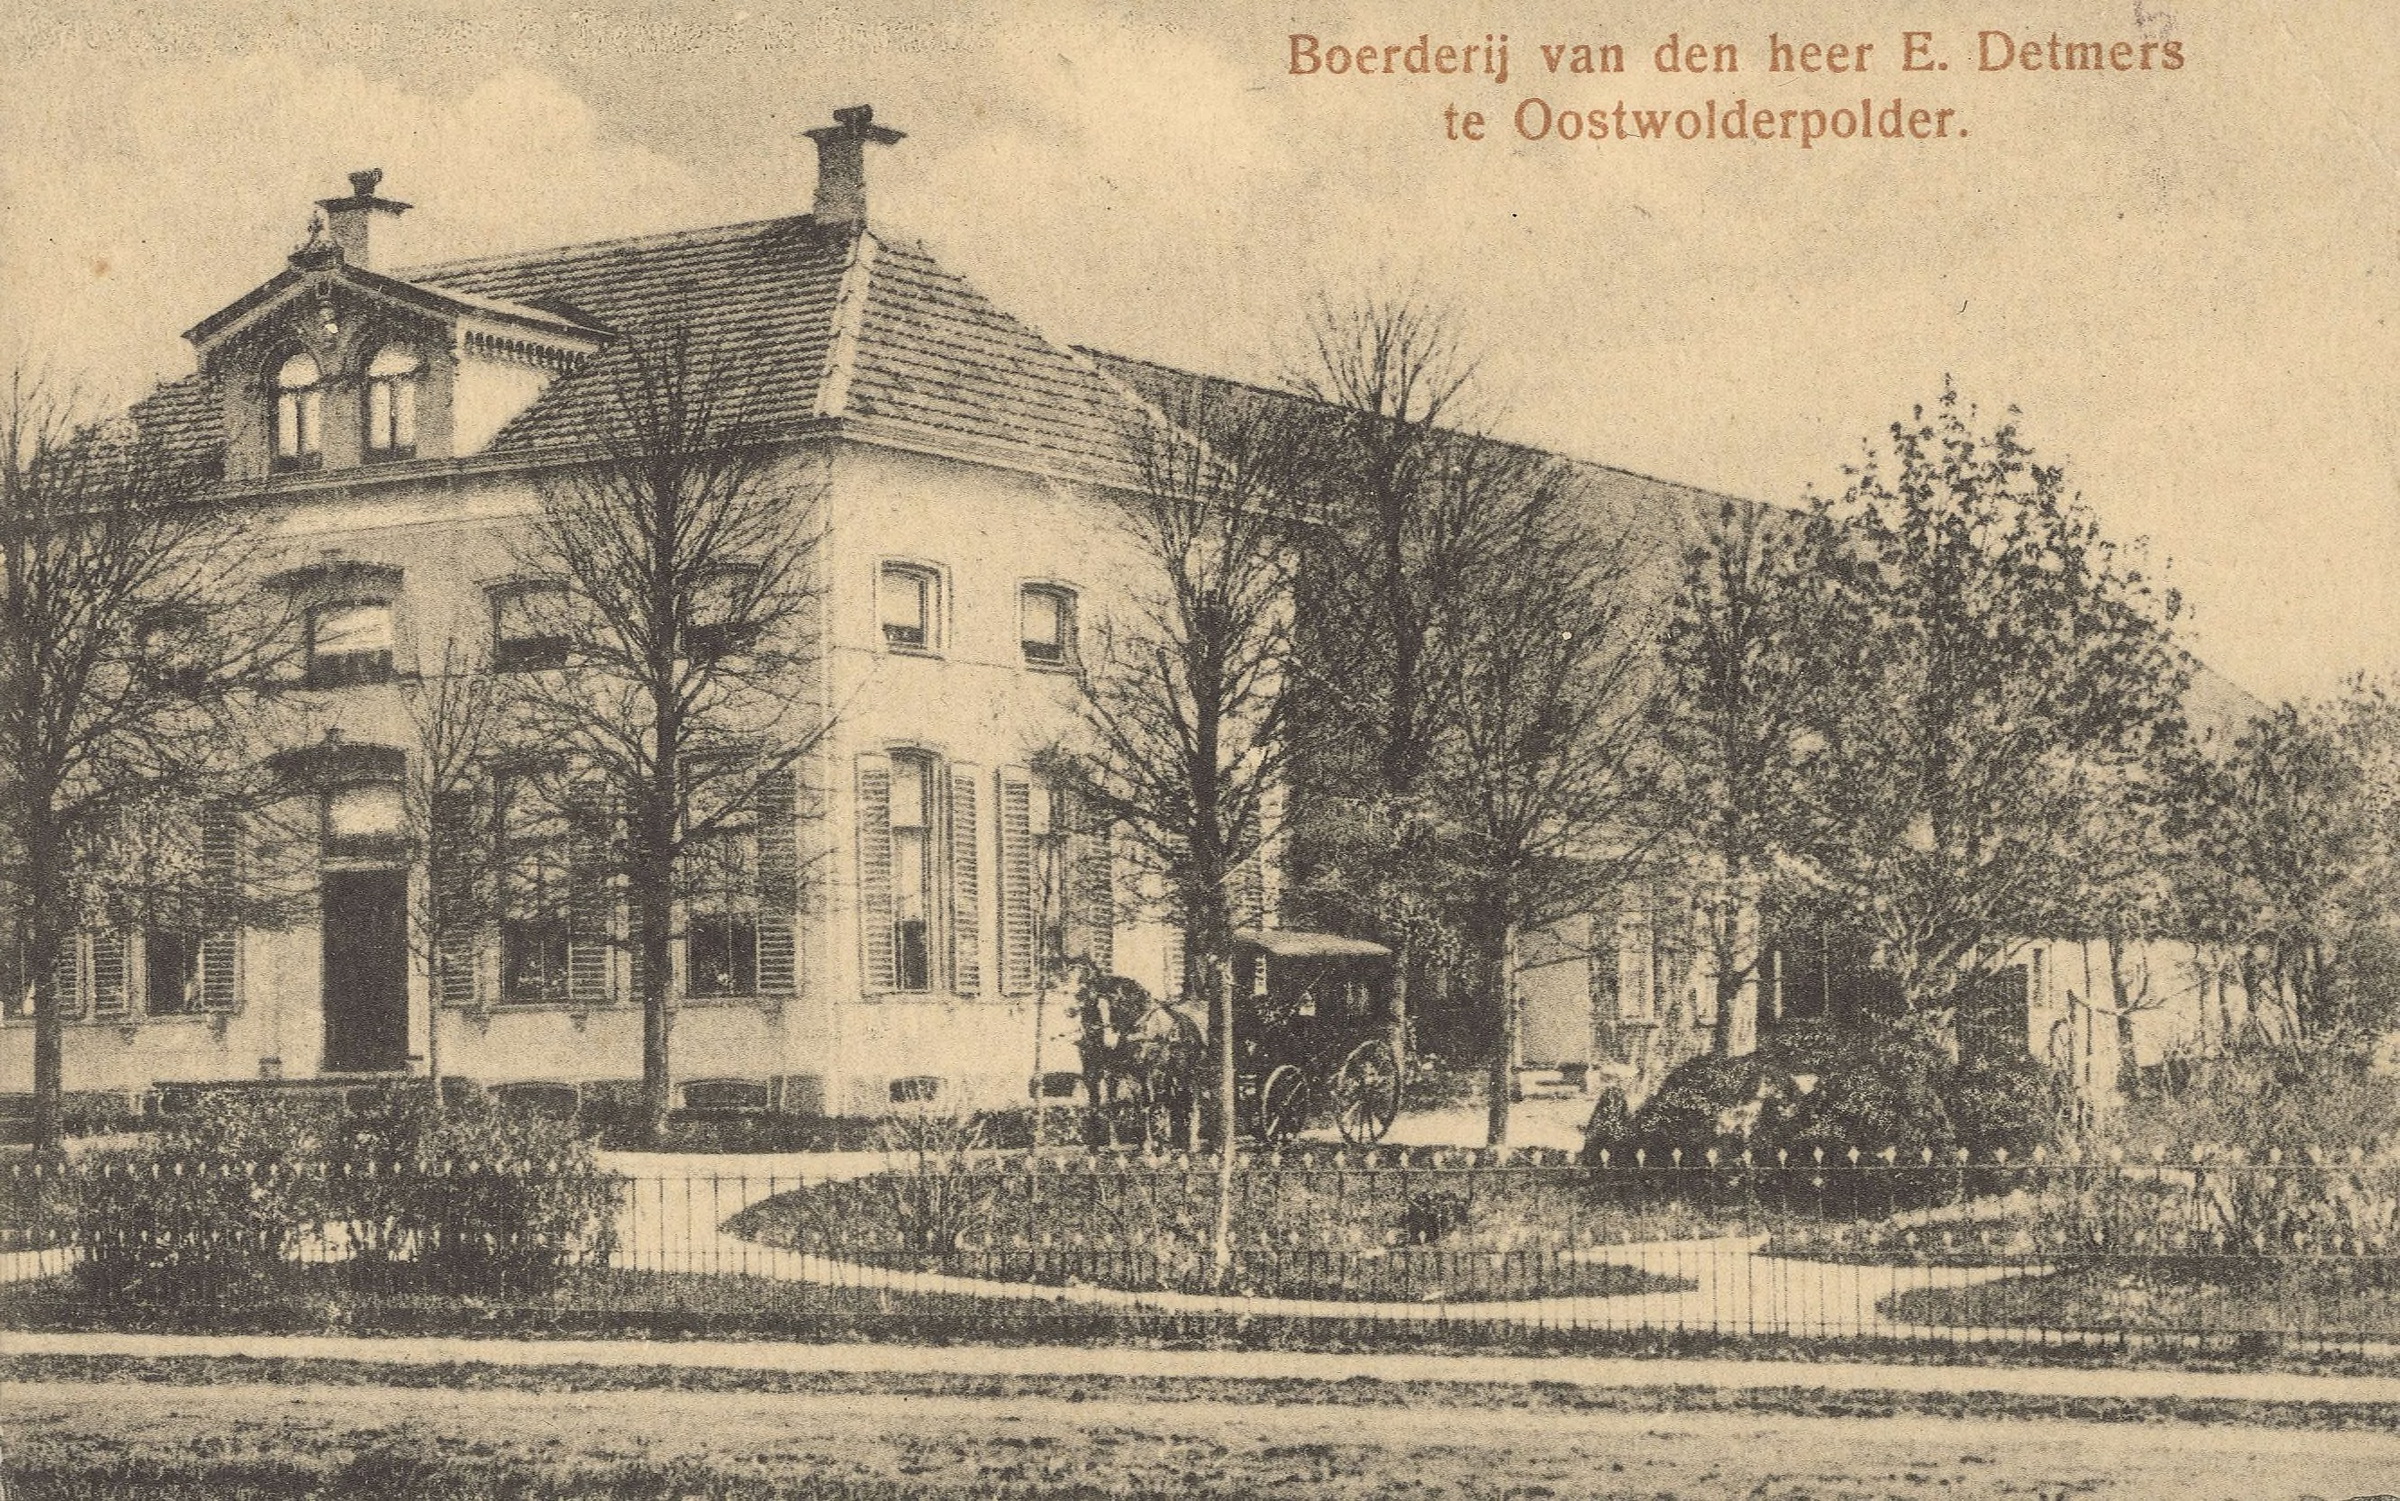 Ansichtkaart van de boerderij van de heer E. Detmers in de Oostwolderpolder. De kaart is vervaardigd tussen 1905 en 1910 en de uitgever is Z.J. Koning Gz. geweest. Bron: Beeldbank Groninger Archieven.